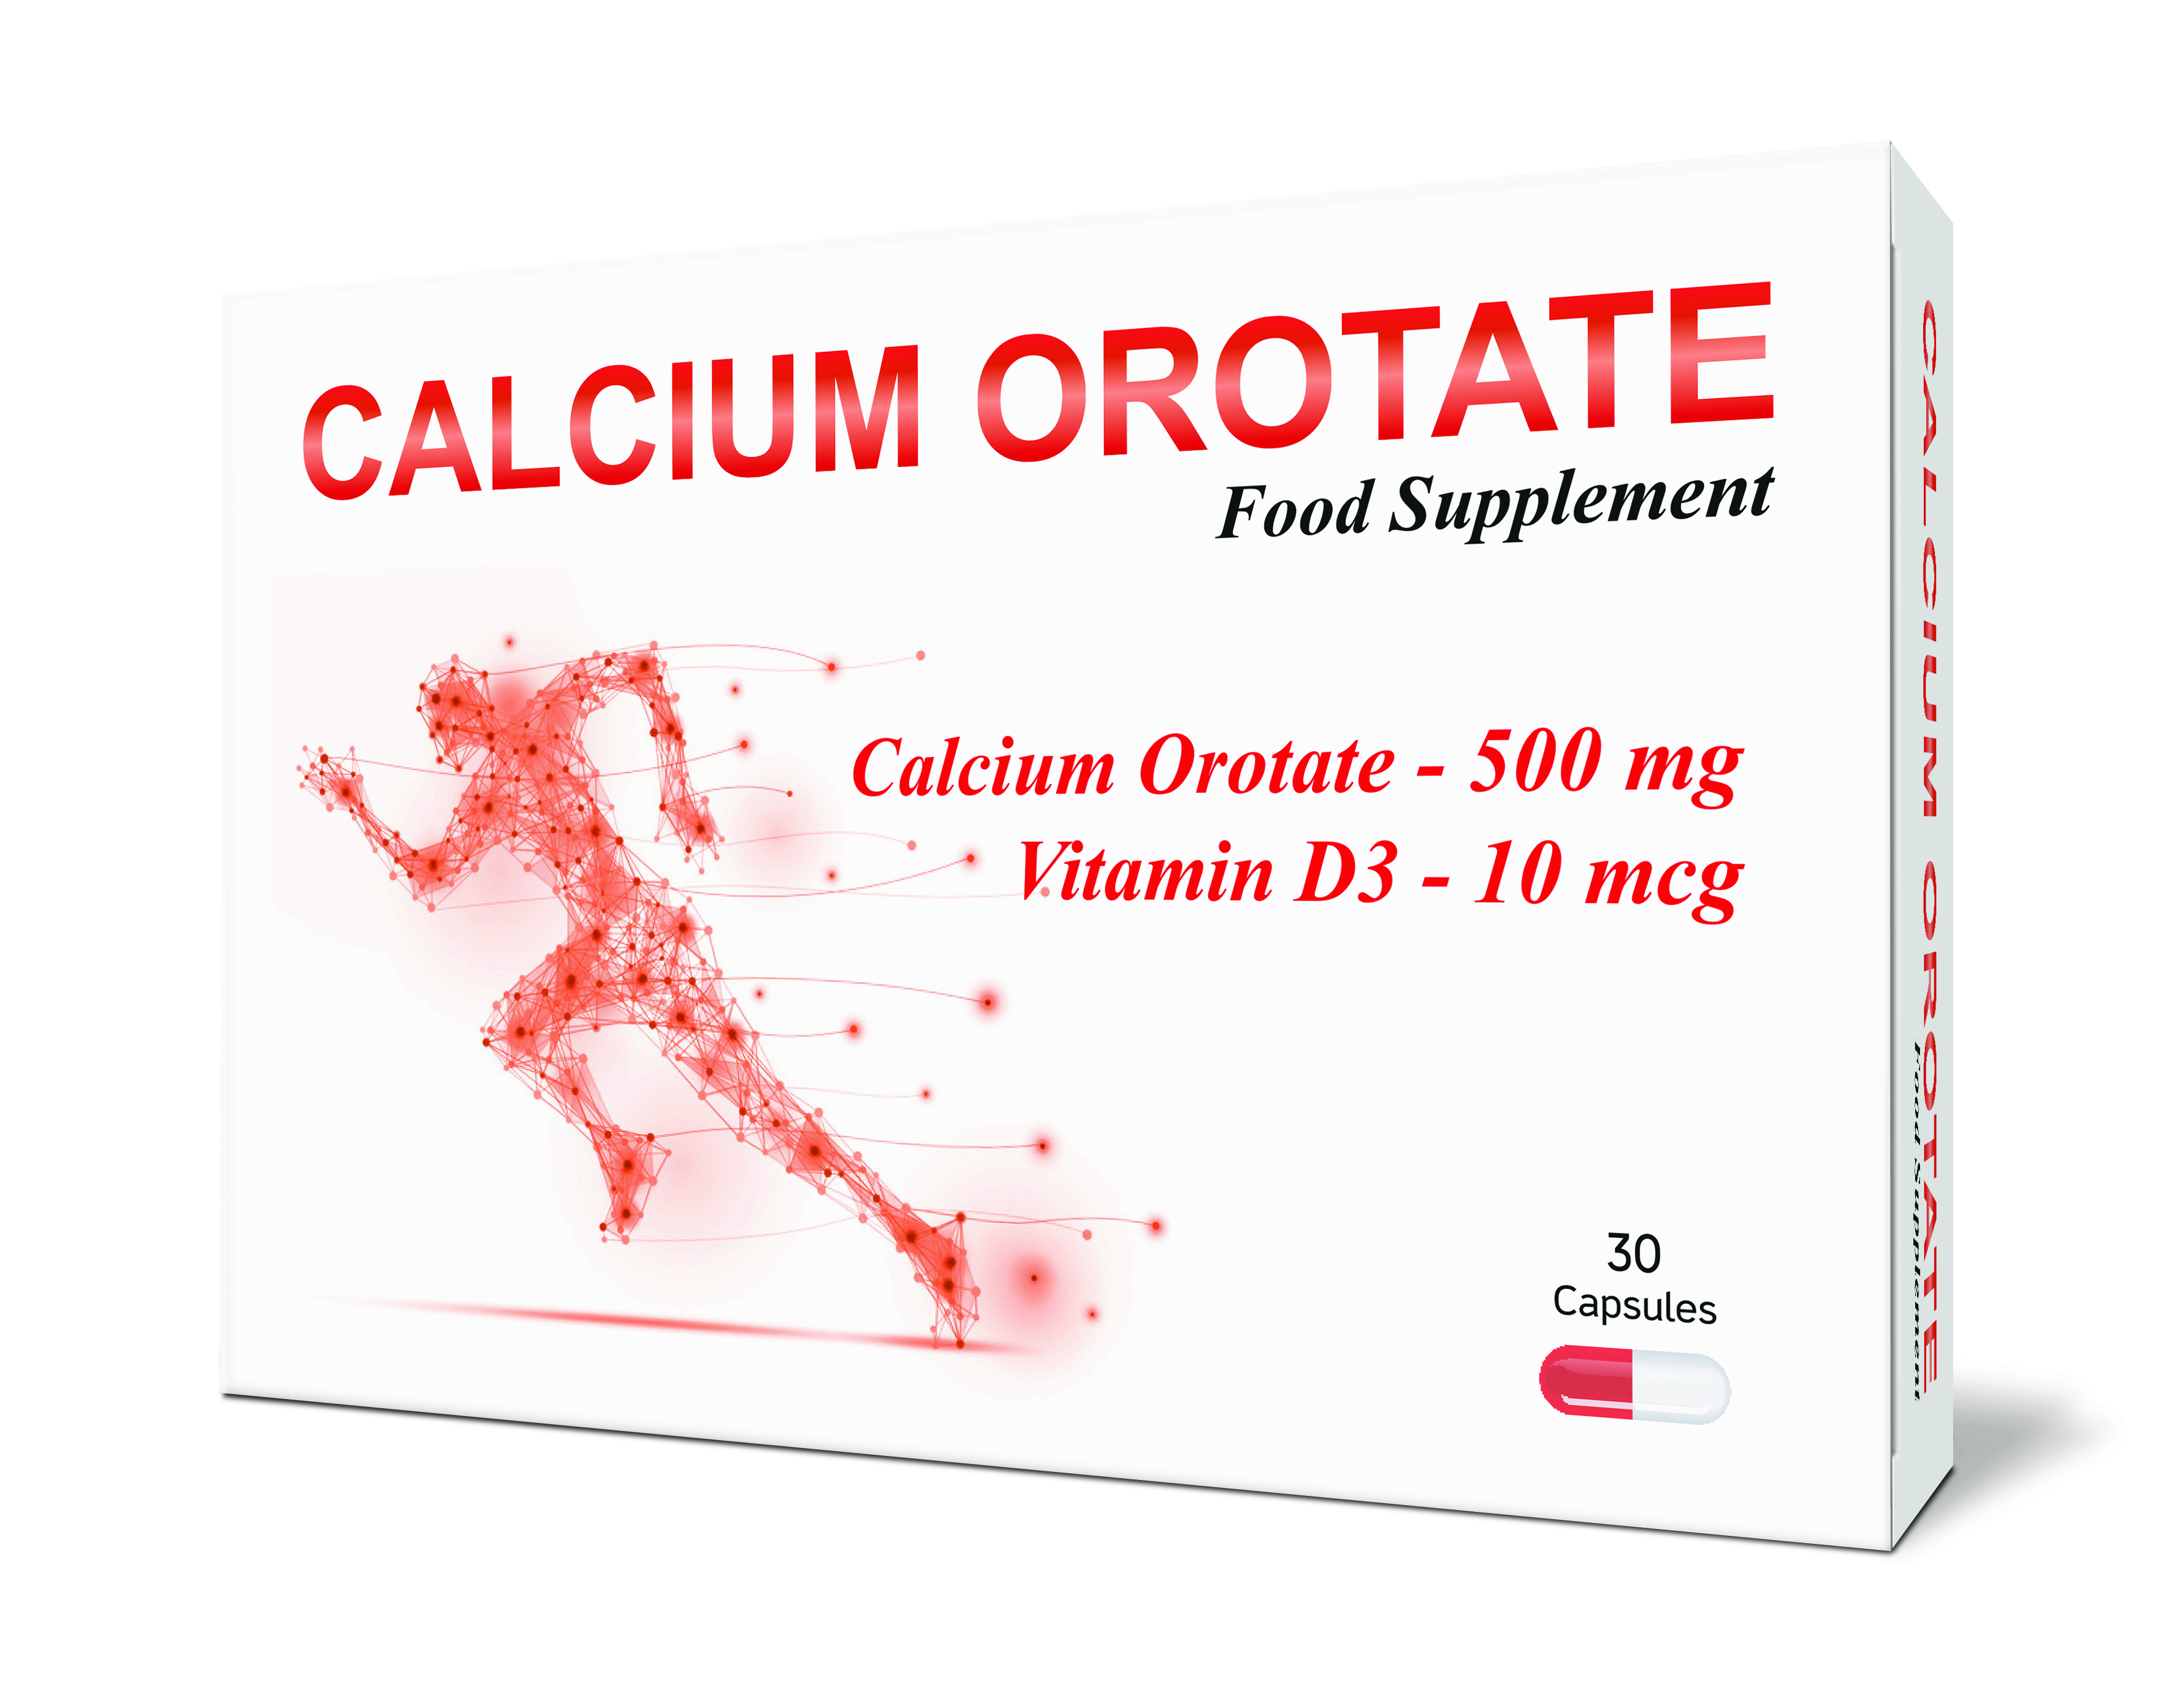 კალციუმის ოროტატი / Calcium Orotate